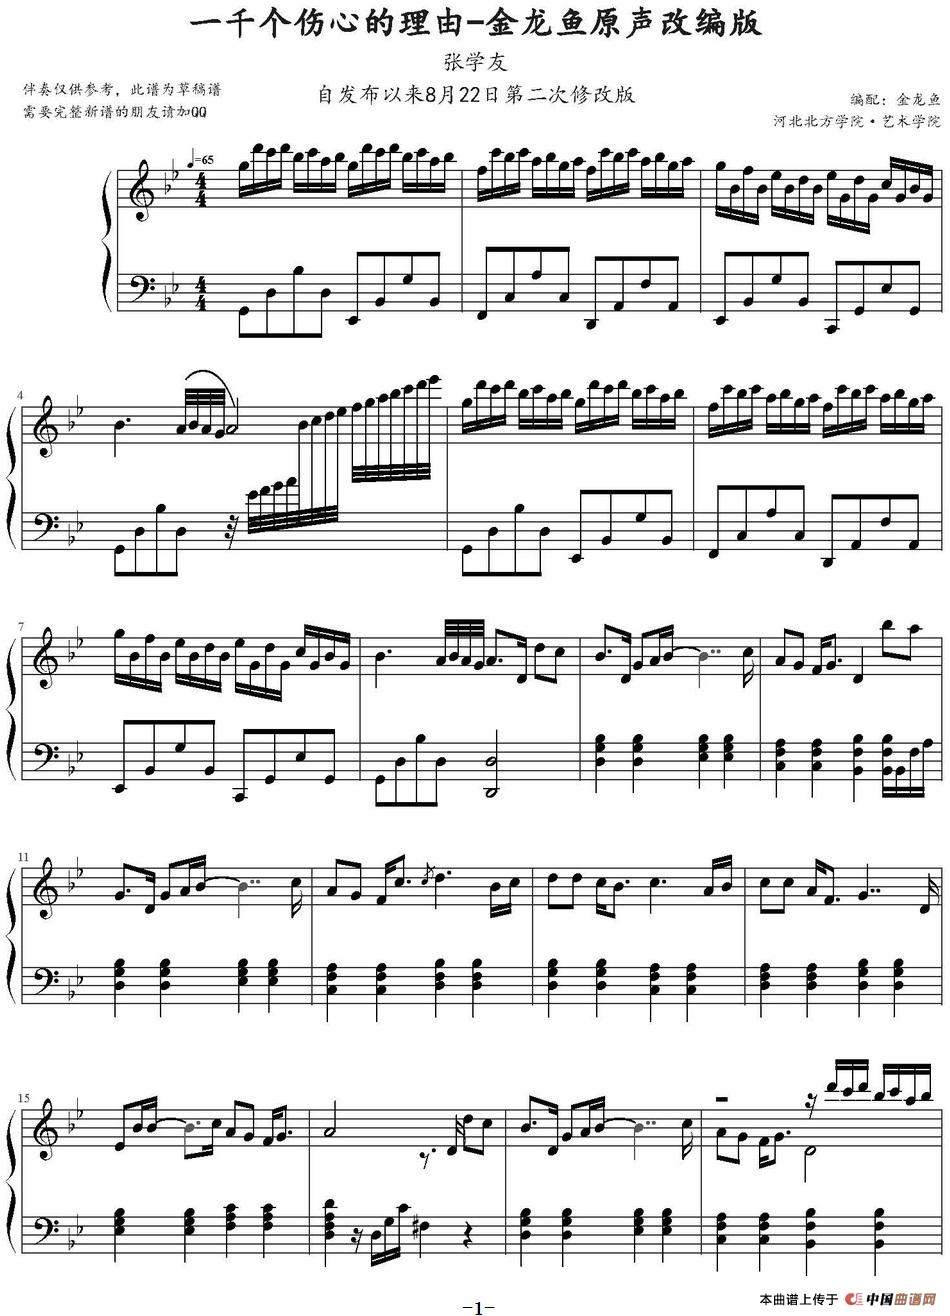 《一千个伤心的理由》钢琴曲谱图分享